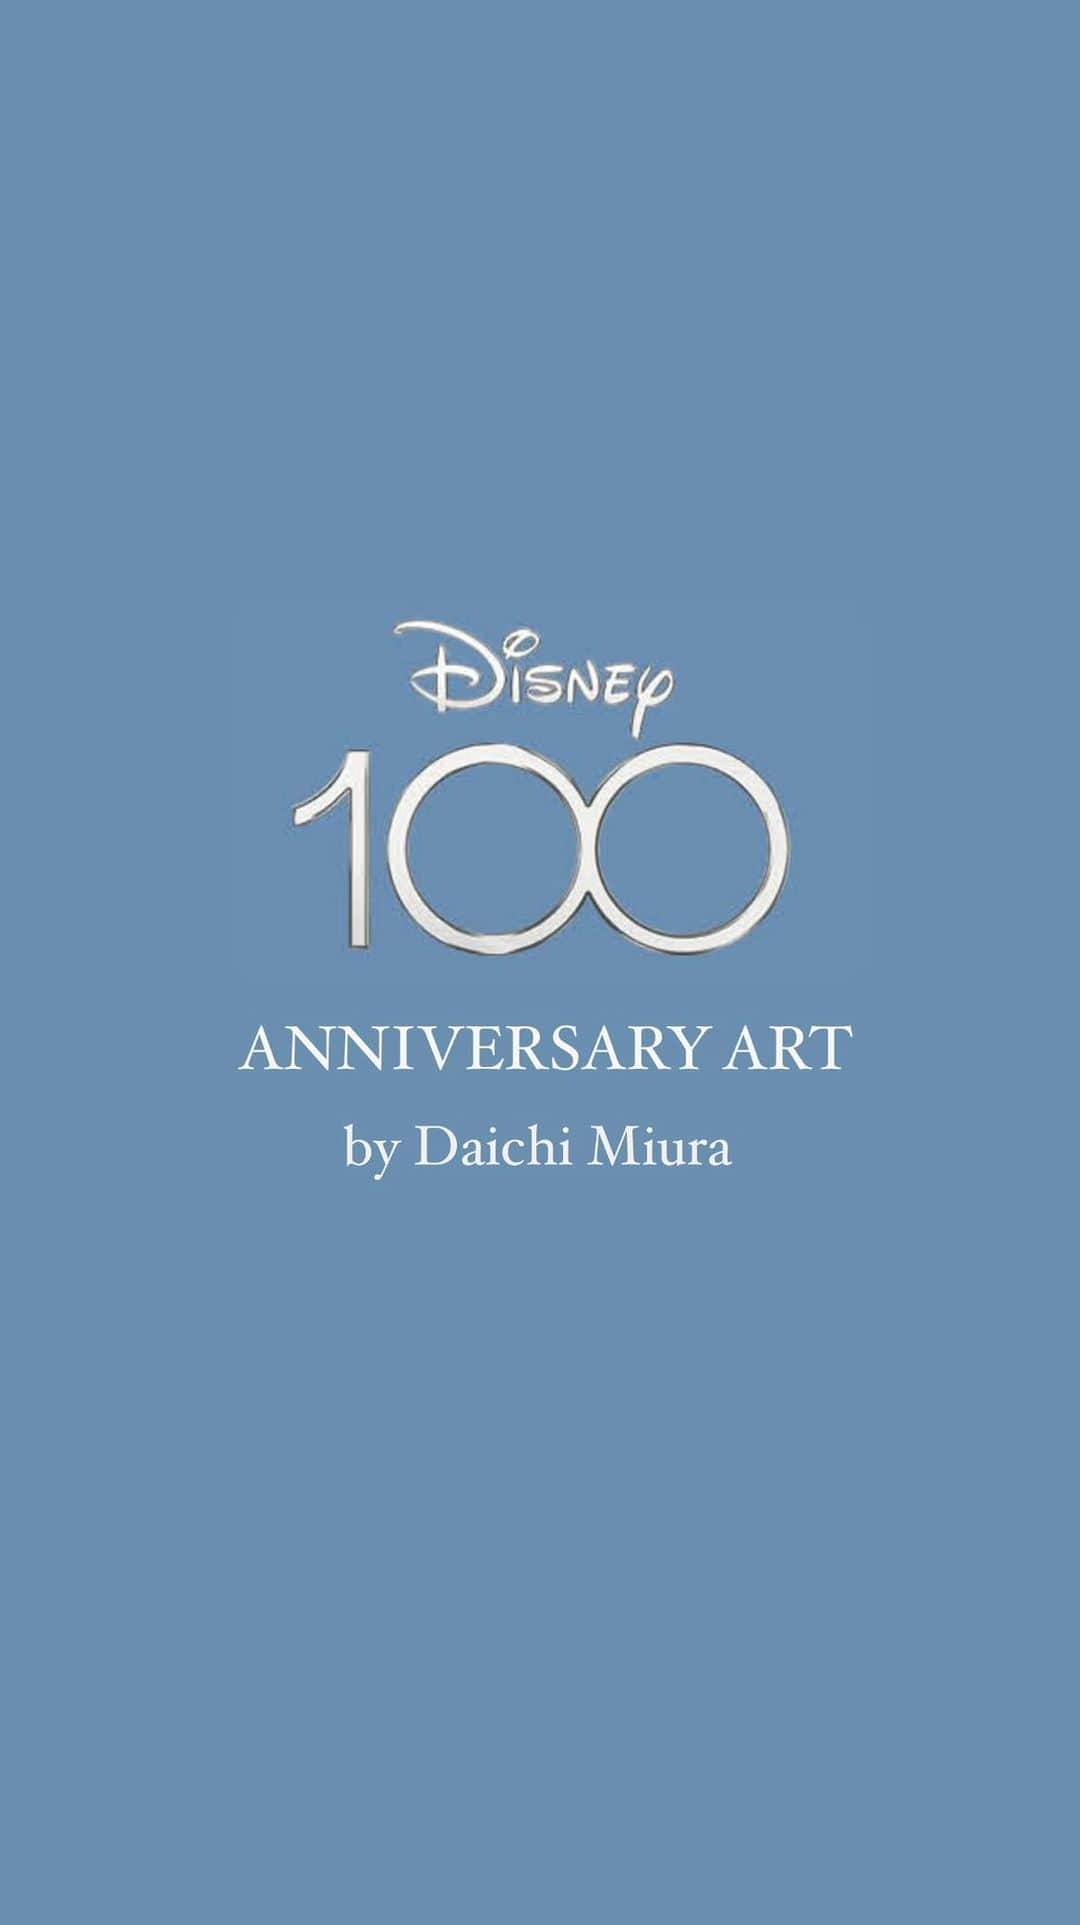 三浦大地のインスタグラム：「Disney100周年記念の企画で世界各国のアーティストが それぞれ一人のディズニーキャラクターを担当し アニバーサリーアートを描く企画になんと 日本代表として選出していただきました！！！！！  100周年という大きな節目に 大役を任命されて大変光栄です！ 昔からよく観ているディズニーアニメーションには数々のキャラクターが登場しますが、僕が担当したキャラクターはなんと…  「シンデレラ」  ディズニーの100周年で、しかもシンデレラってディズニーのメインアイコンやん！責任重大！ って思いながらどんな絵にしようか考えました。  ディズニーといえば…シンデレラといえば…  「魔法」  魔法という名の人生の輝きの粒が重なり合って、線になって色々な想いや形になってゆくイメージで大好きなシンデレラのシーンを描かせていただきました！  魔法は現実に存在します。  信じていればね。  ディズニー100周年おめでとうございます！  "No matter how your heart is grieving If you keep on believing The dream that you wish will come true"」